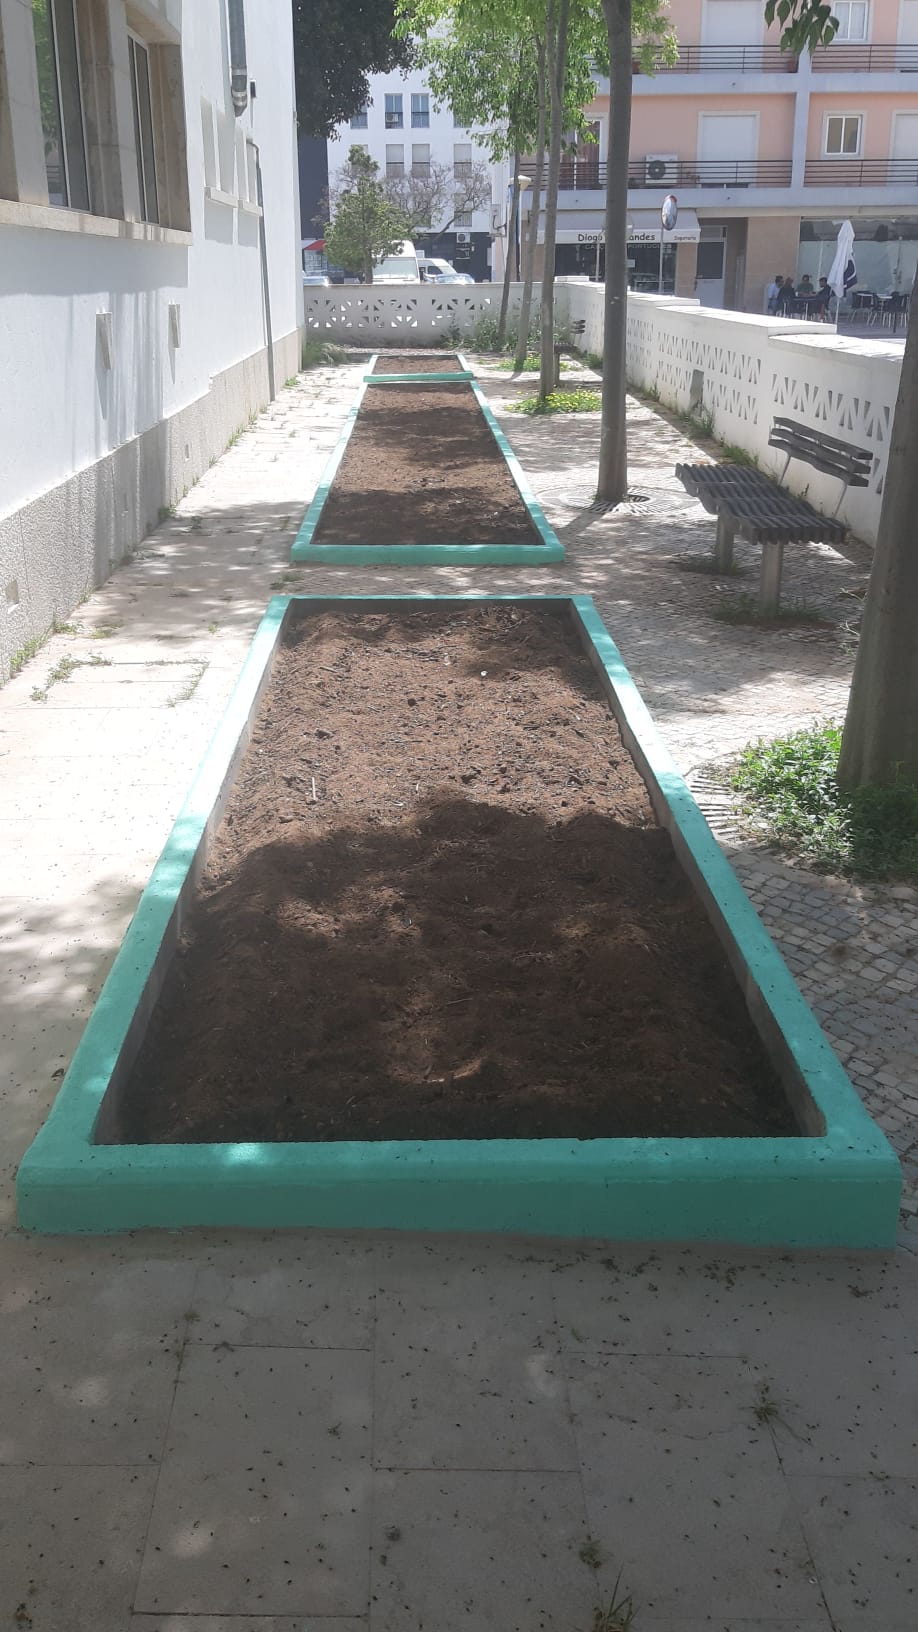 Preparação da terra: remoção das ervas e restos da plantação do ano anterior.